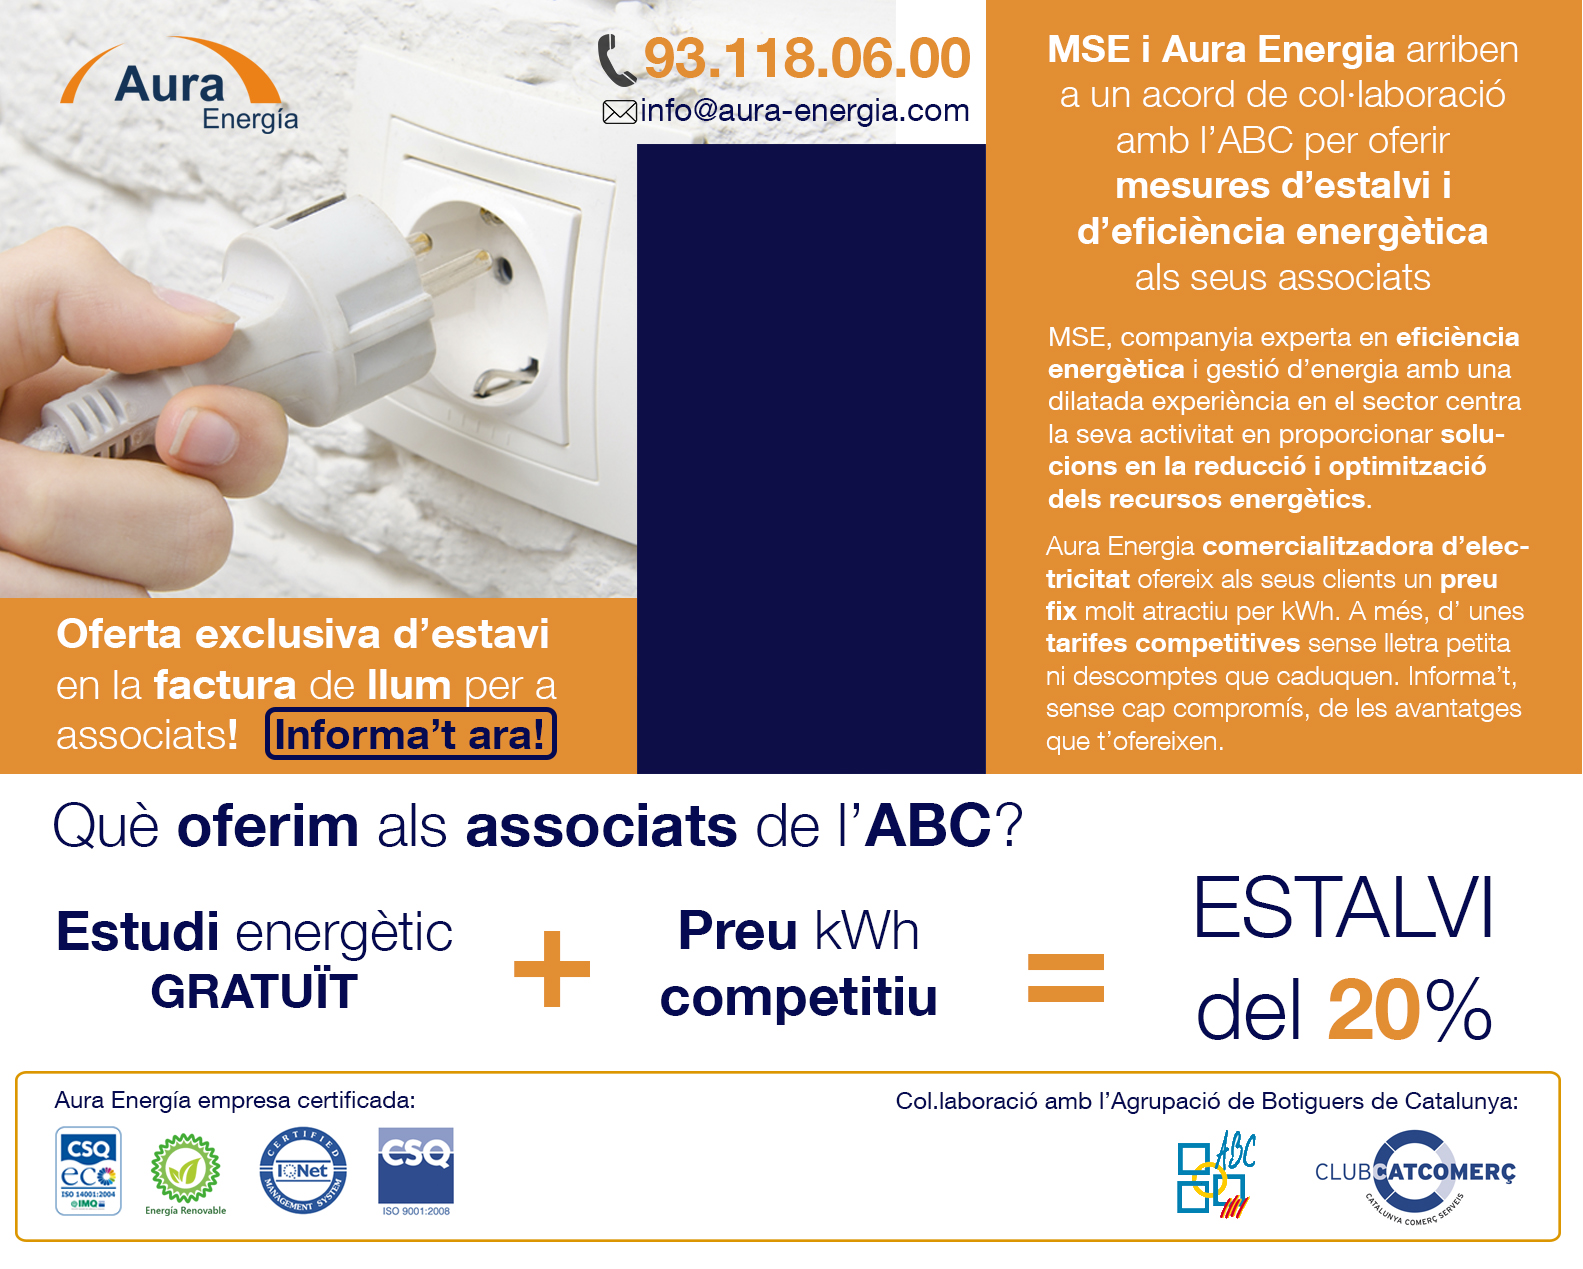 MSE i Aura Energia arriben a un acord de col.laboració amb l'ABC